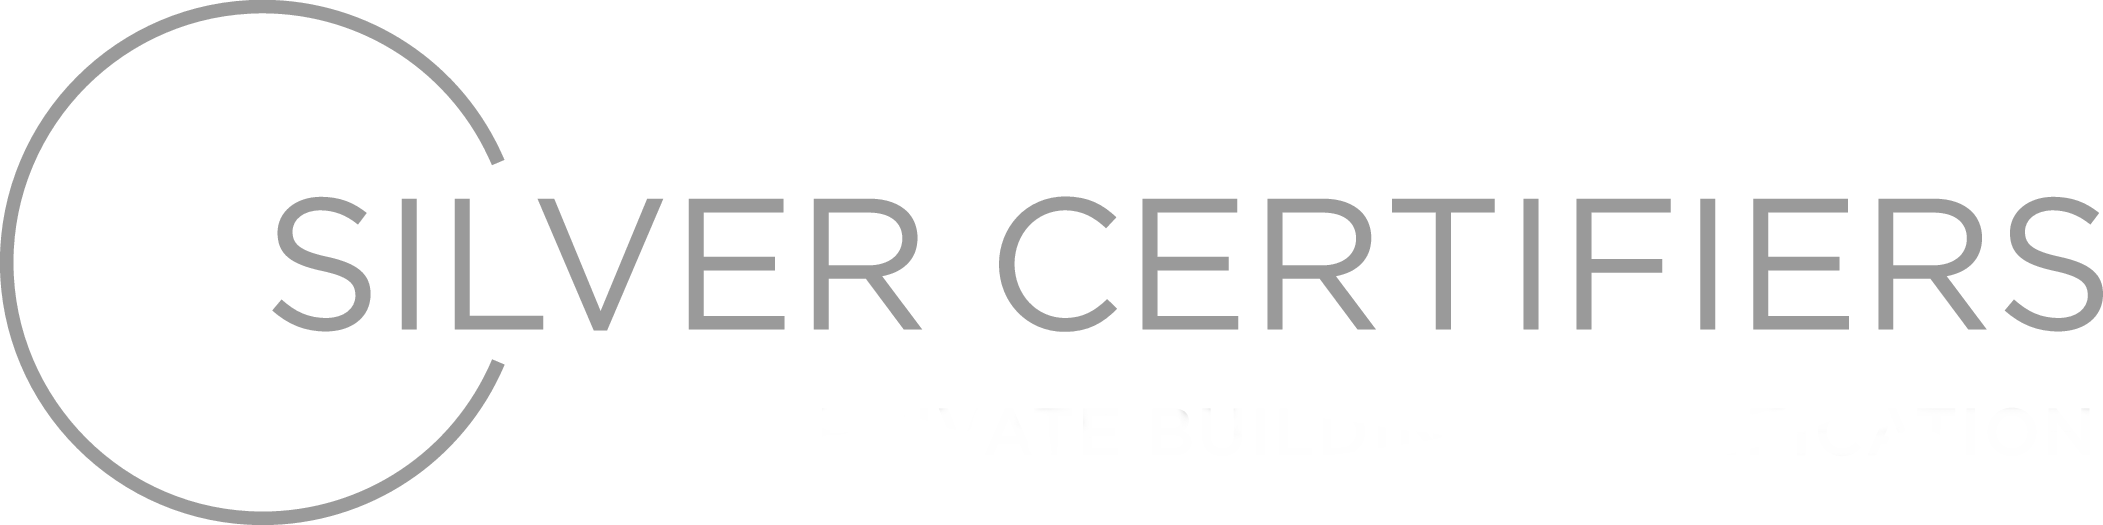 Silver Certifiers